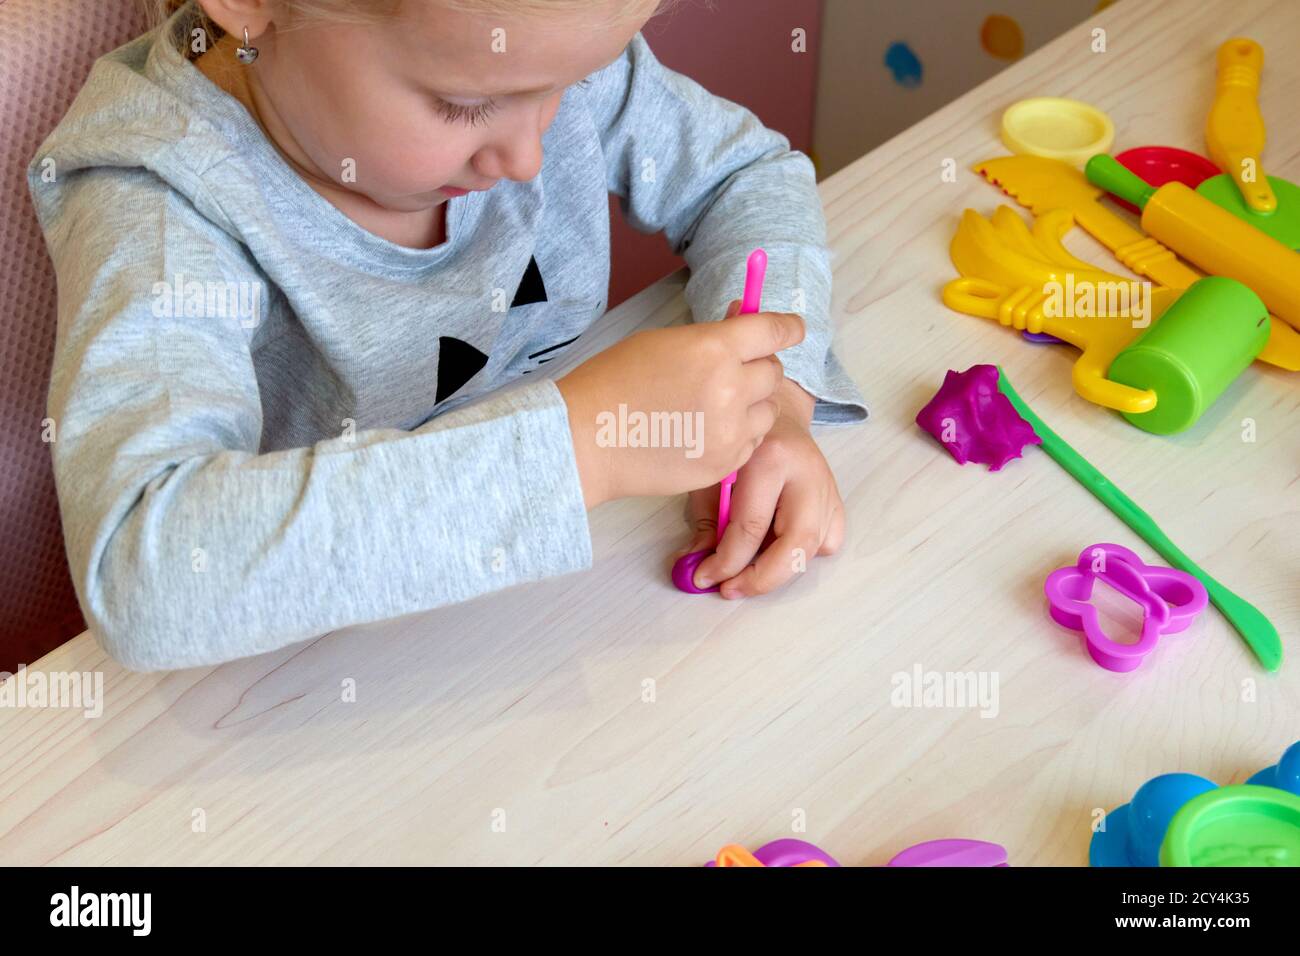 3 anni ragazza arti creative. Mani del bambino che giocano con plastilina di argilla colorata. Auto-isolamento Covid-19, formazione online, homeschooling. Bambina Foto Stock